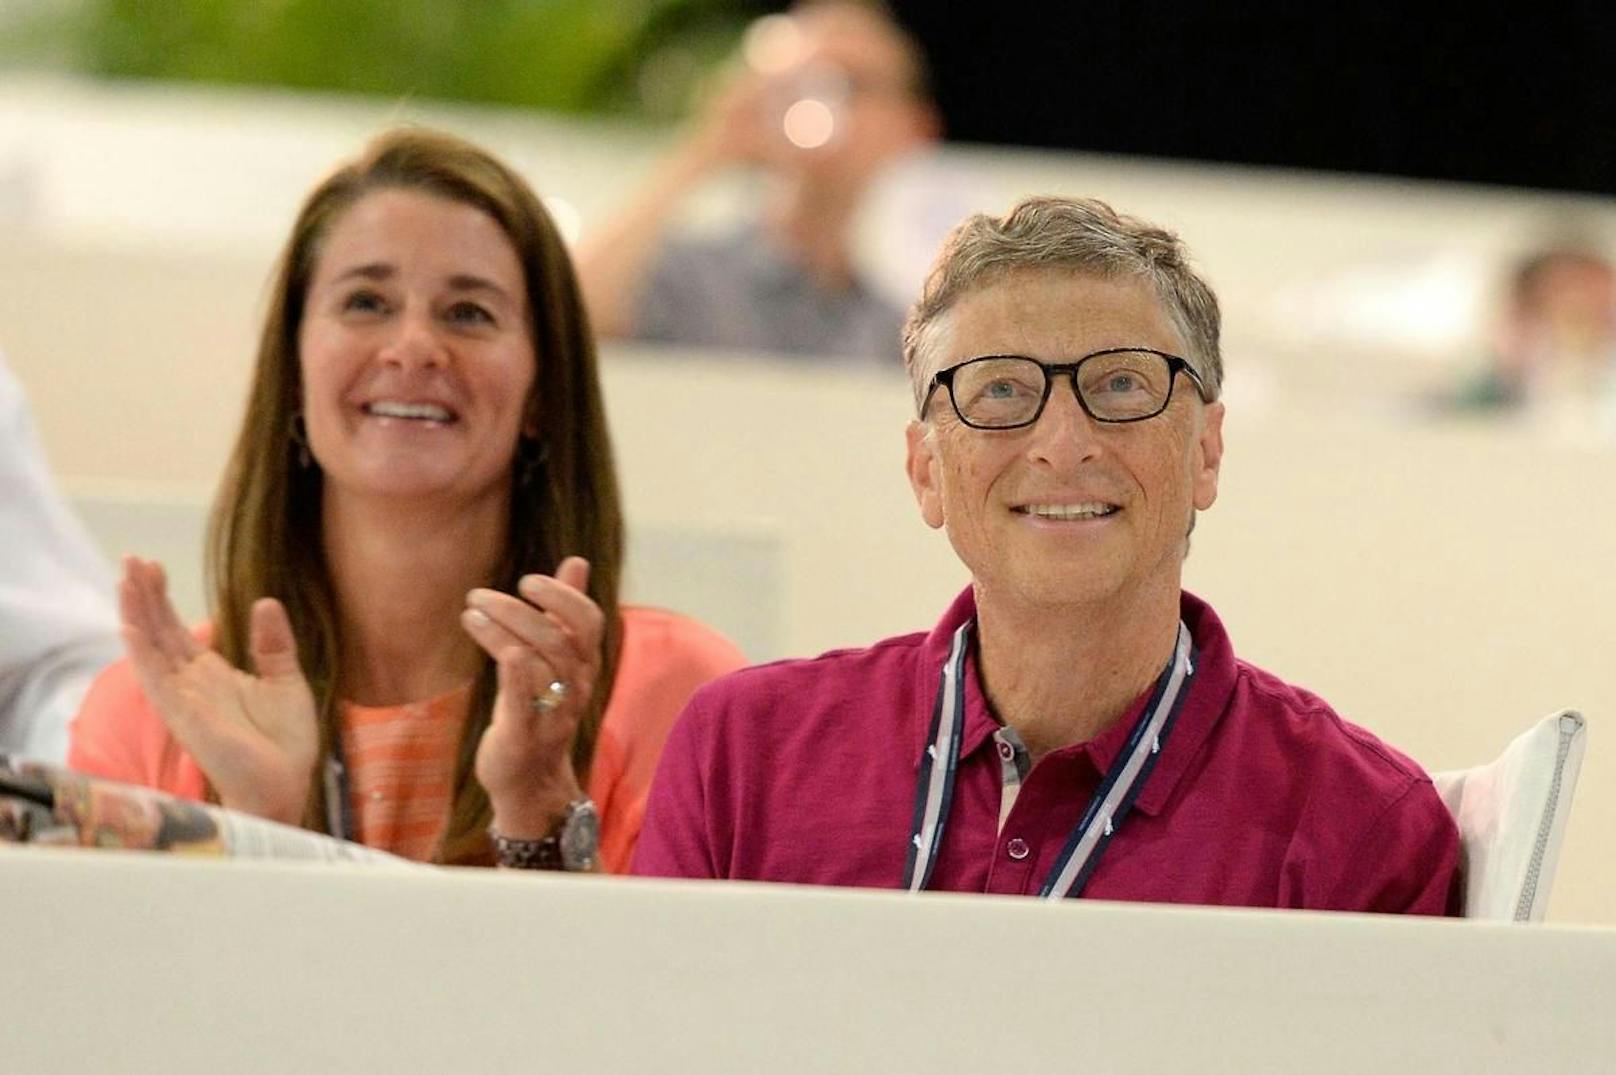 Bill Gates gilt als einer der reichsten Menschen der Welt. Die milliardenschwere gemeinsame Stiftung des Paares gehört zu den einflussreichsten Hilfsorganisationen im Bereich der Gesundheitsvorsorge und Entwicklungszusammenarbeit.